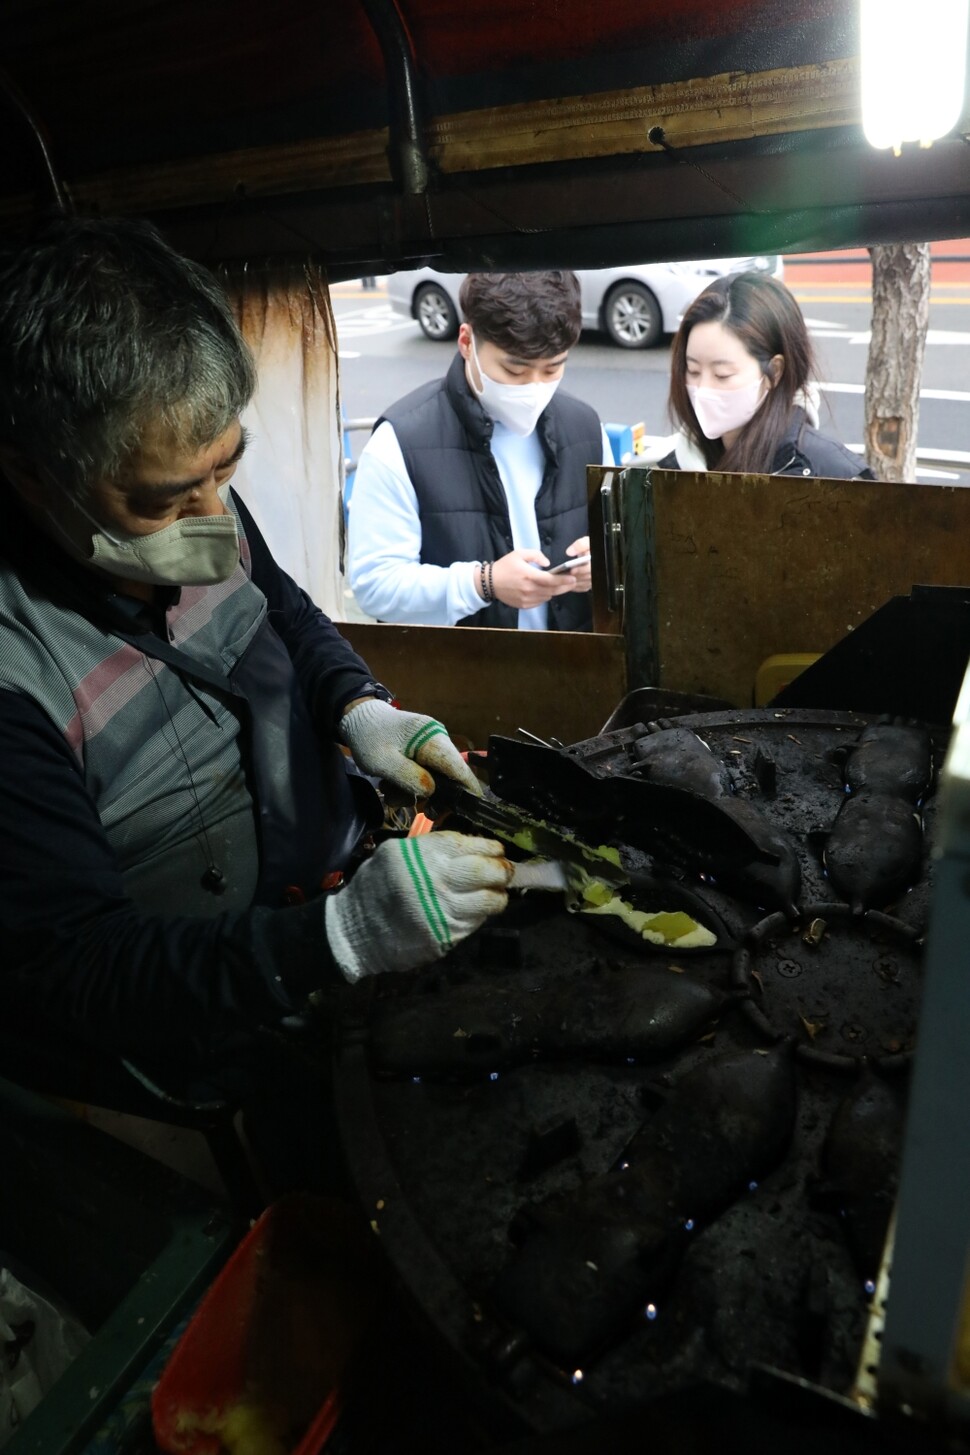 효창공원역 앞에서 20여 년간 붕어빵을 팔아온 ‘효공잉어빵’ 사장 김종복씨가 묵묵히 붕어빵을 굽고 있다. 류우종 기자